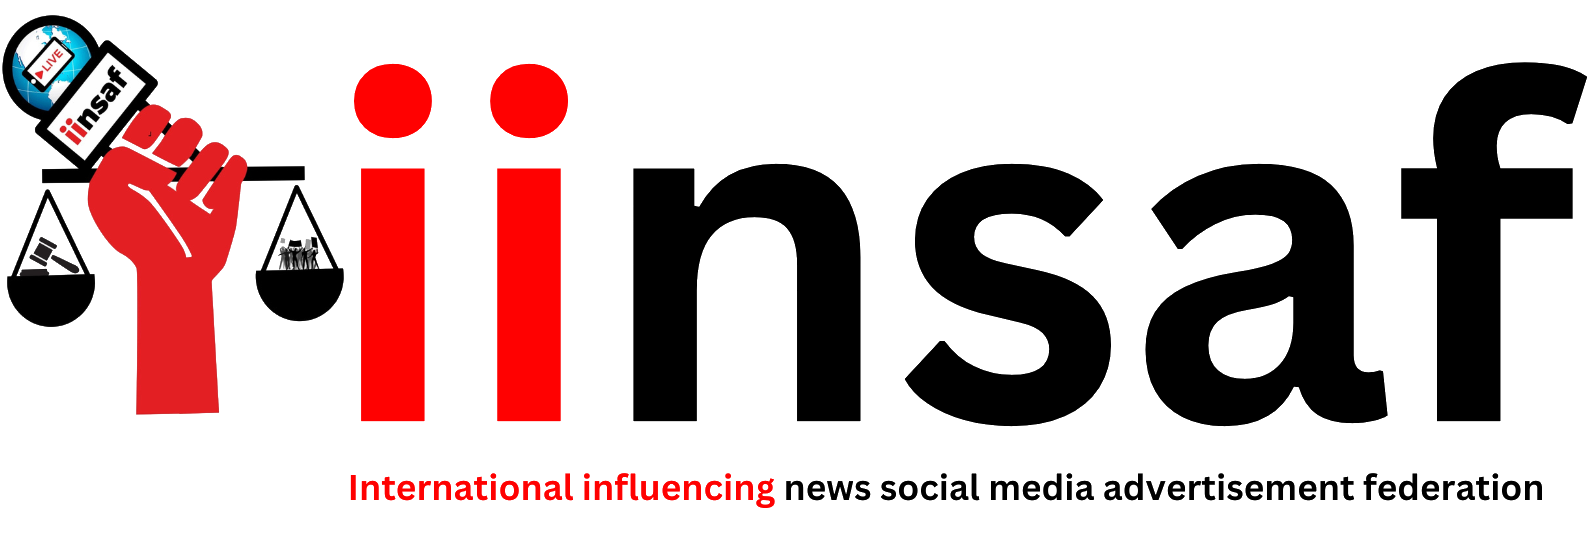 iinsaf logo